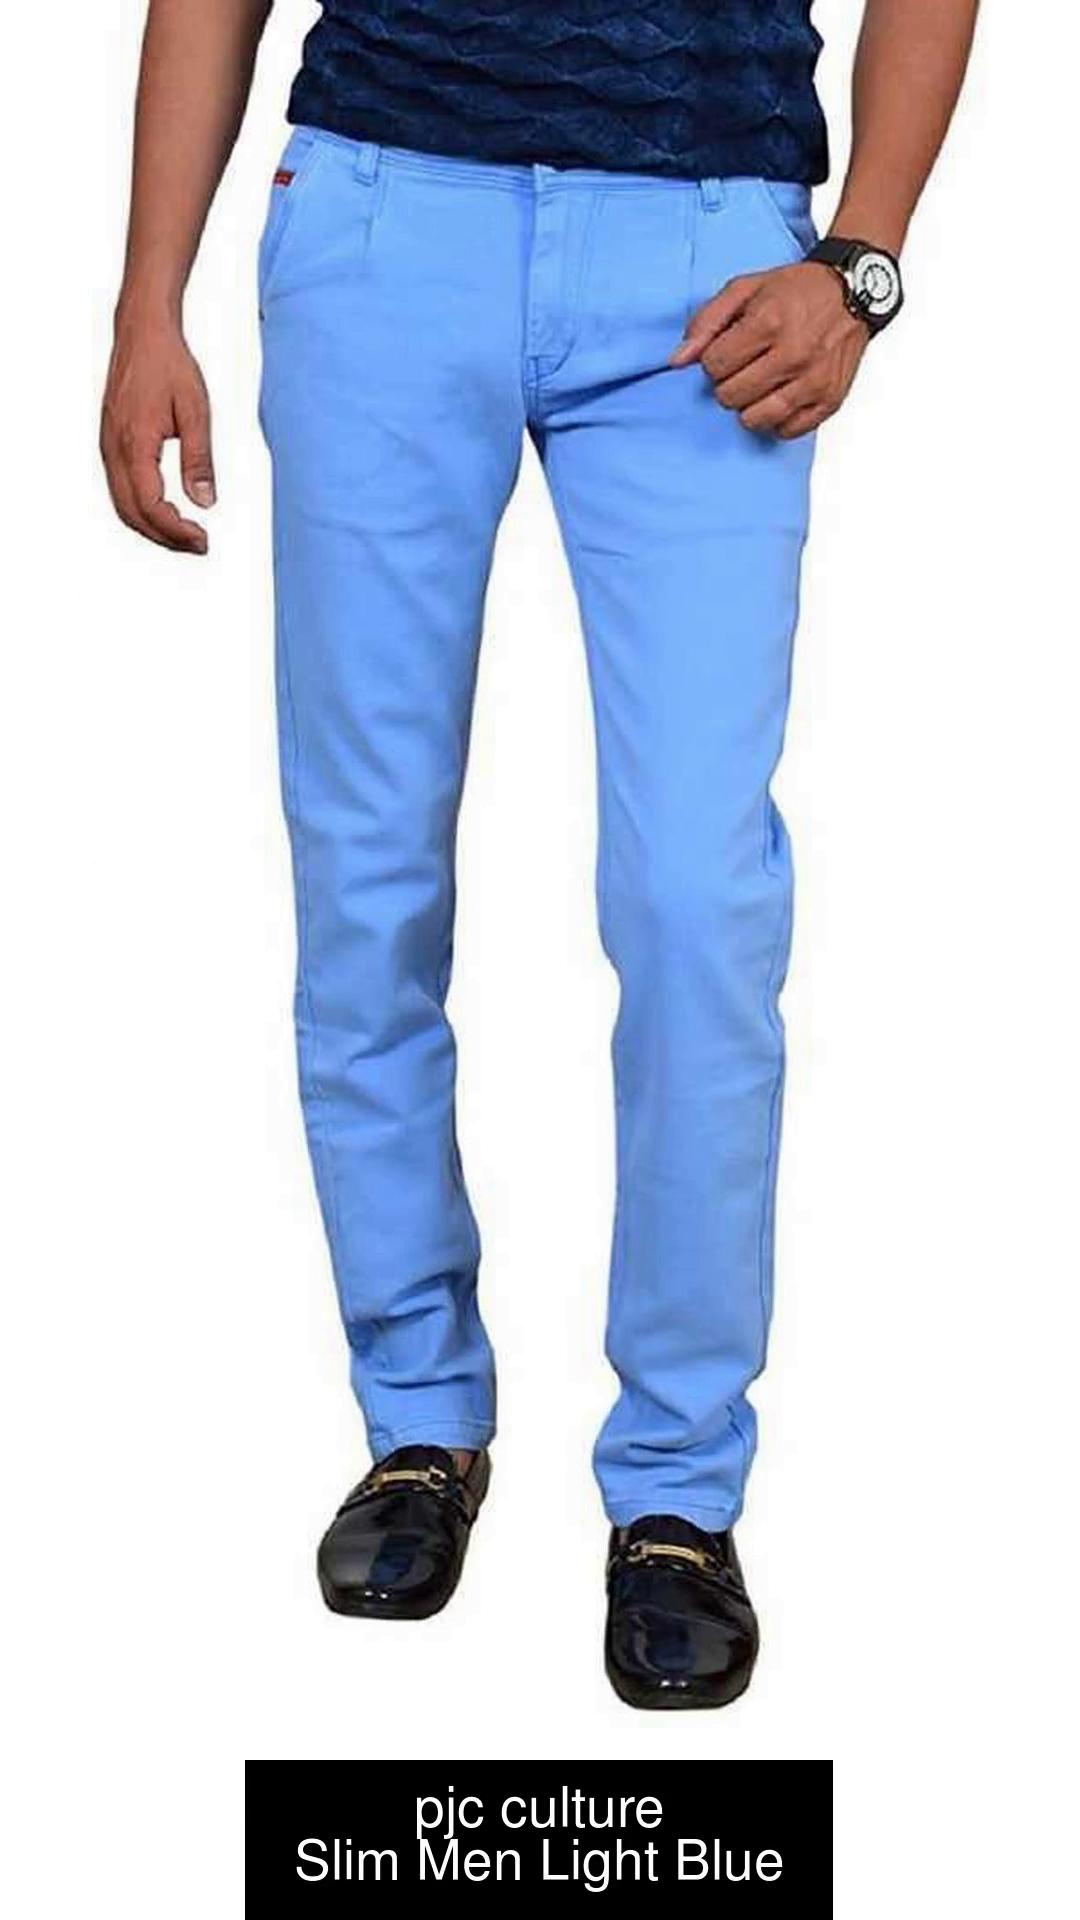 pjc culture Slim Men Light Blue Jeans - Buy Slim Men Light Blue Jeans Online at Best Prices in |